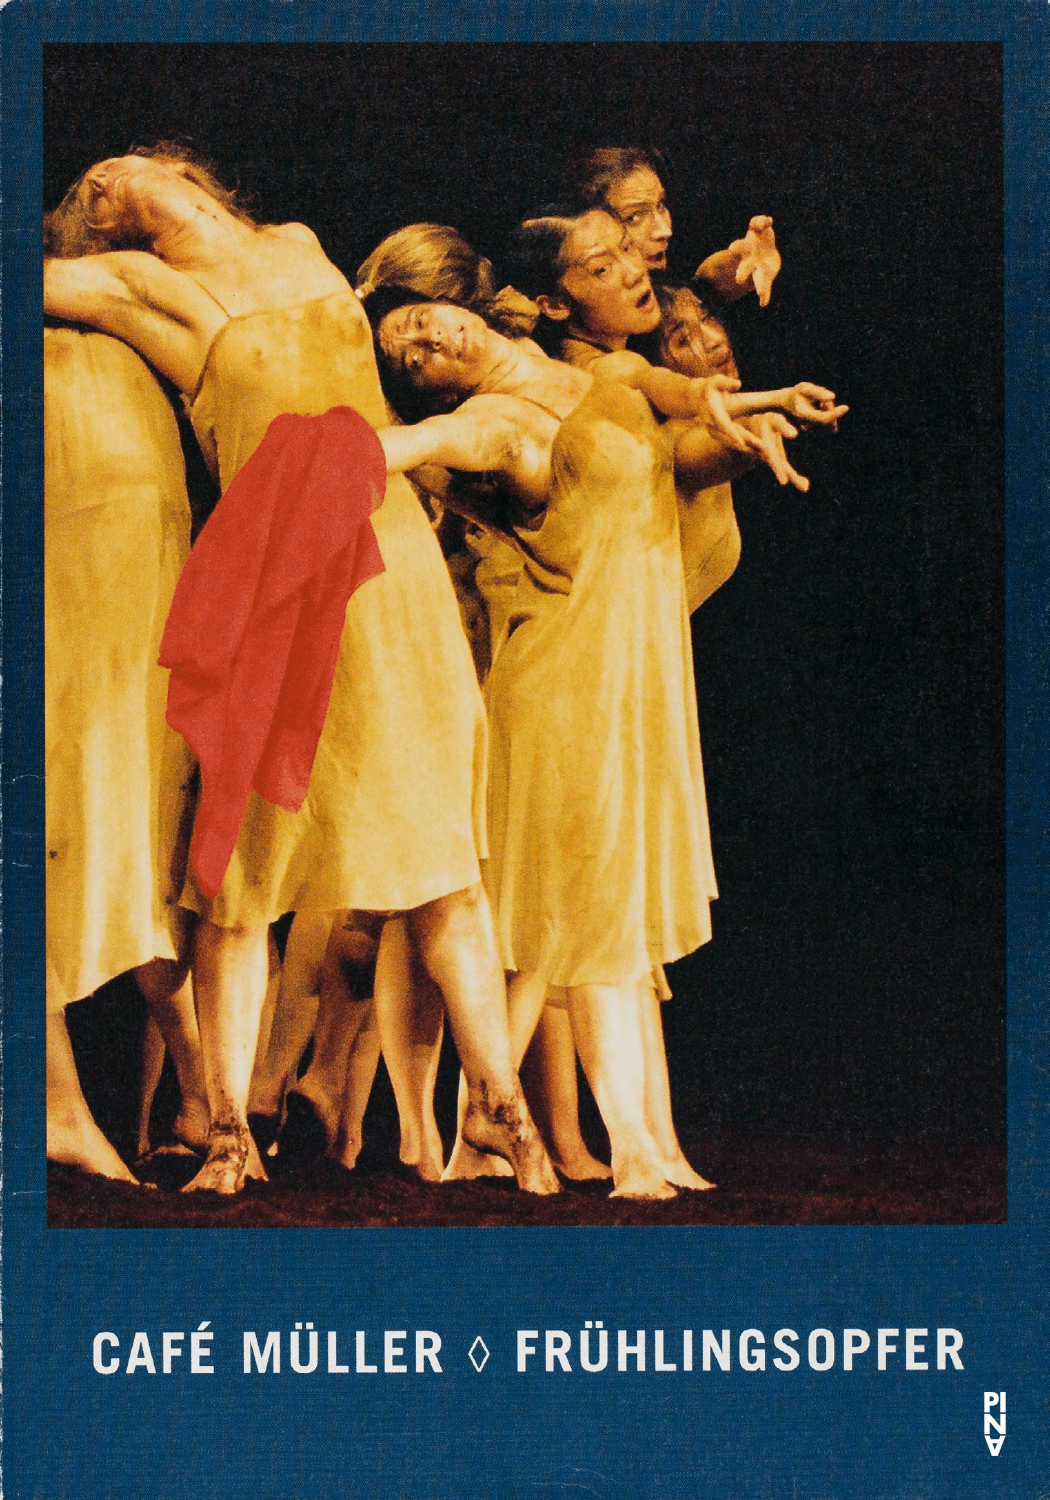 Programme pour « Café Müller » et « Le Sacre du printemps » de Pina Bausch avec Tanztheater Wuppertal à Bochum, 16 mai 2003 – 18 mai 2003